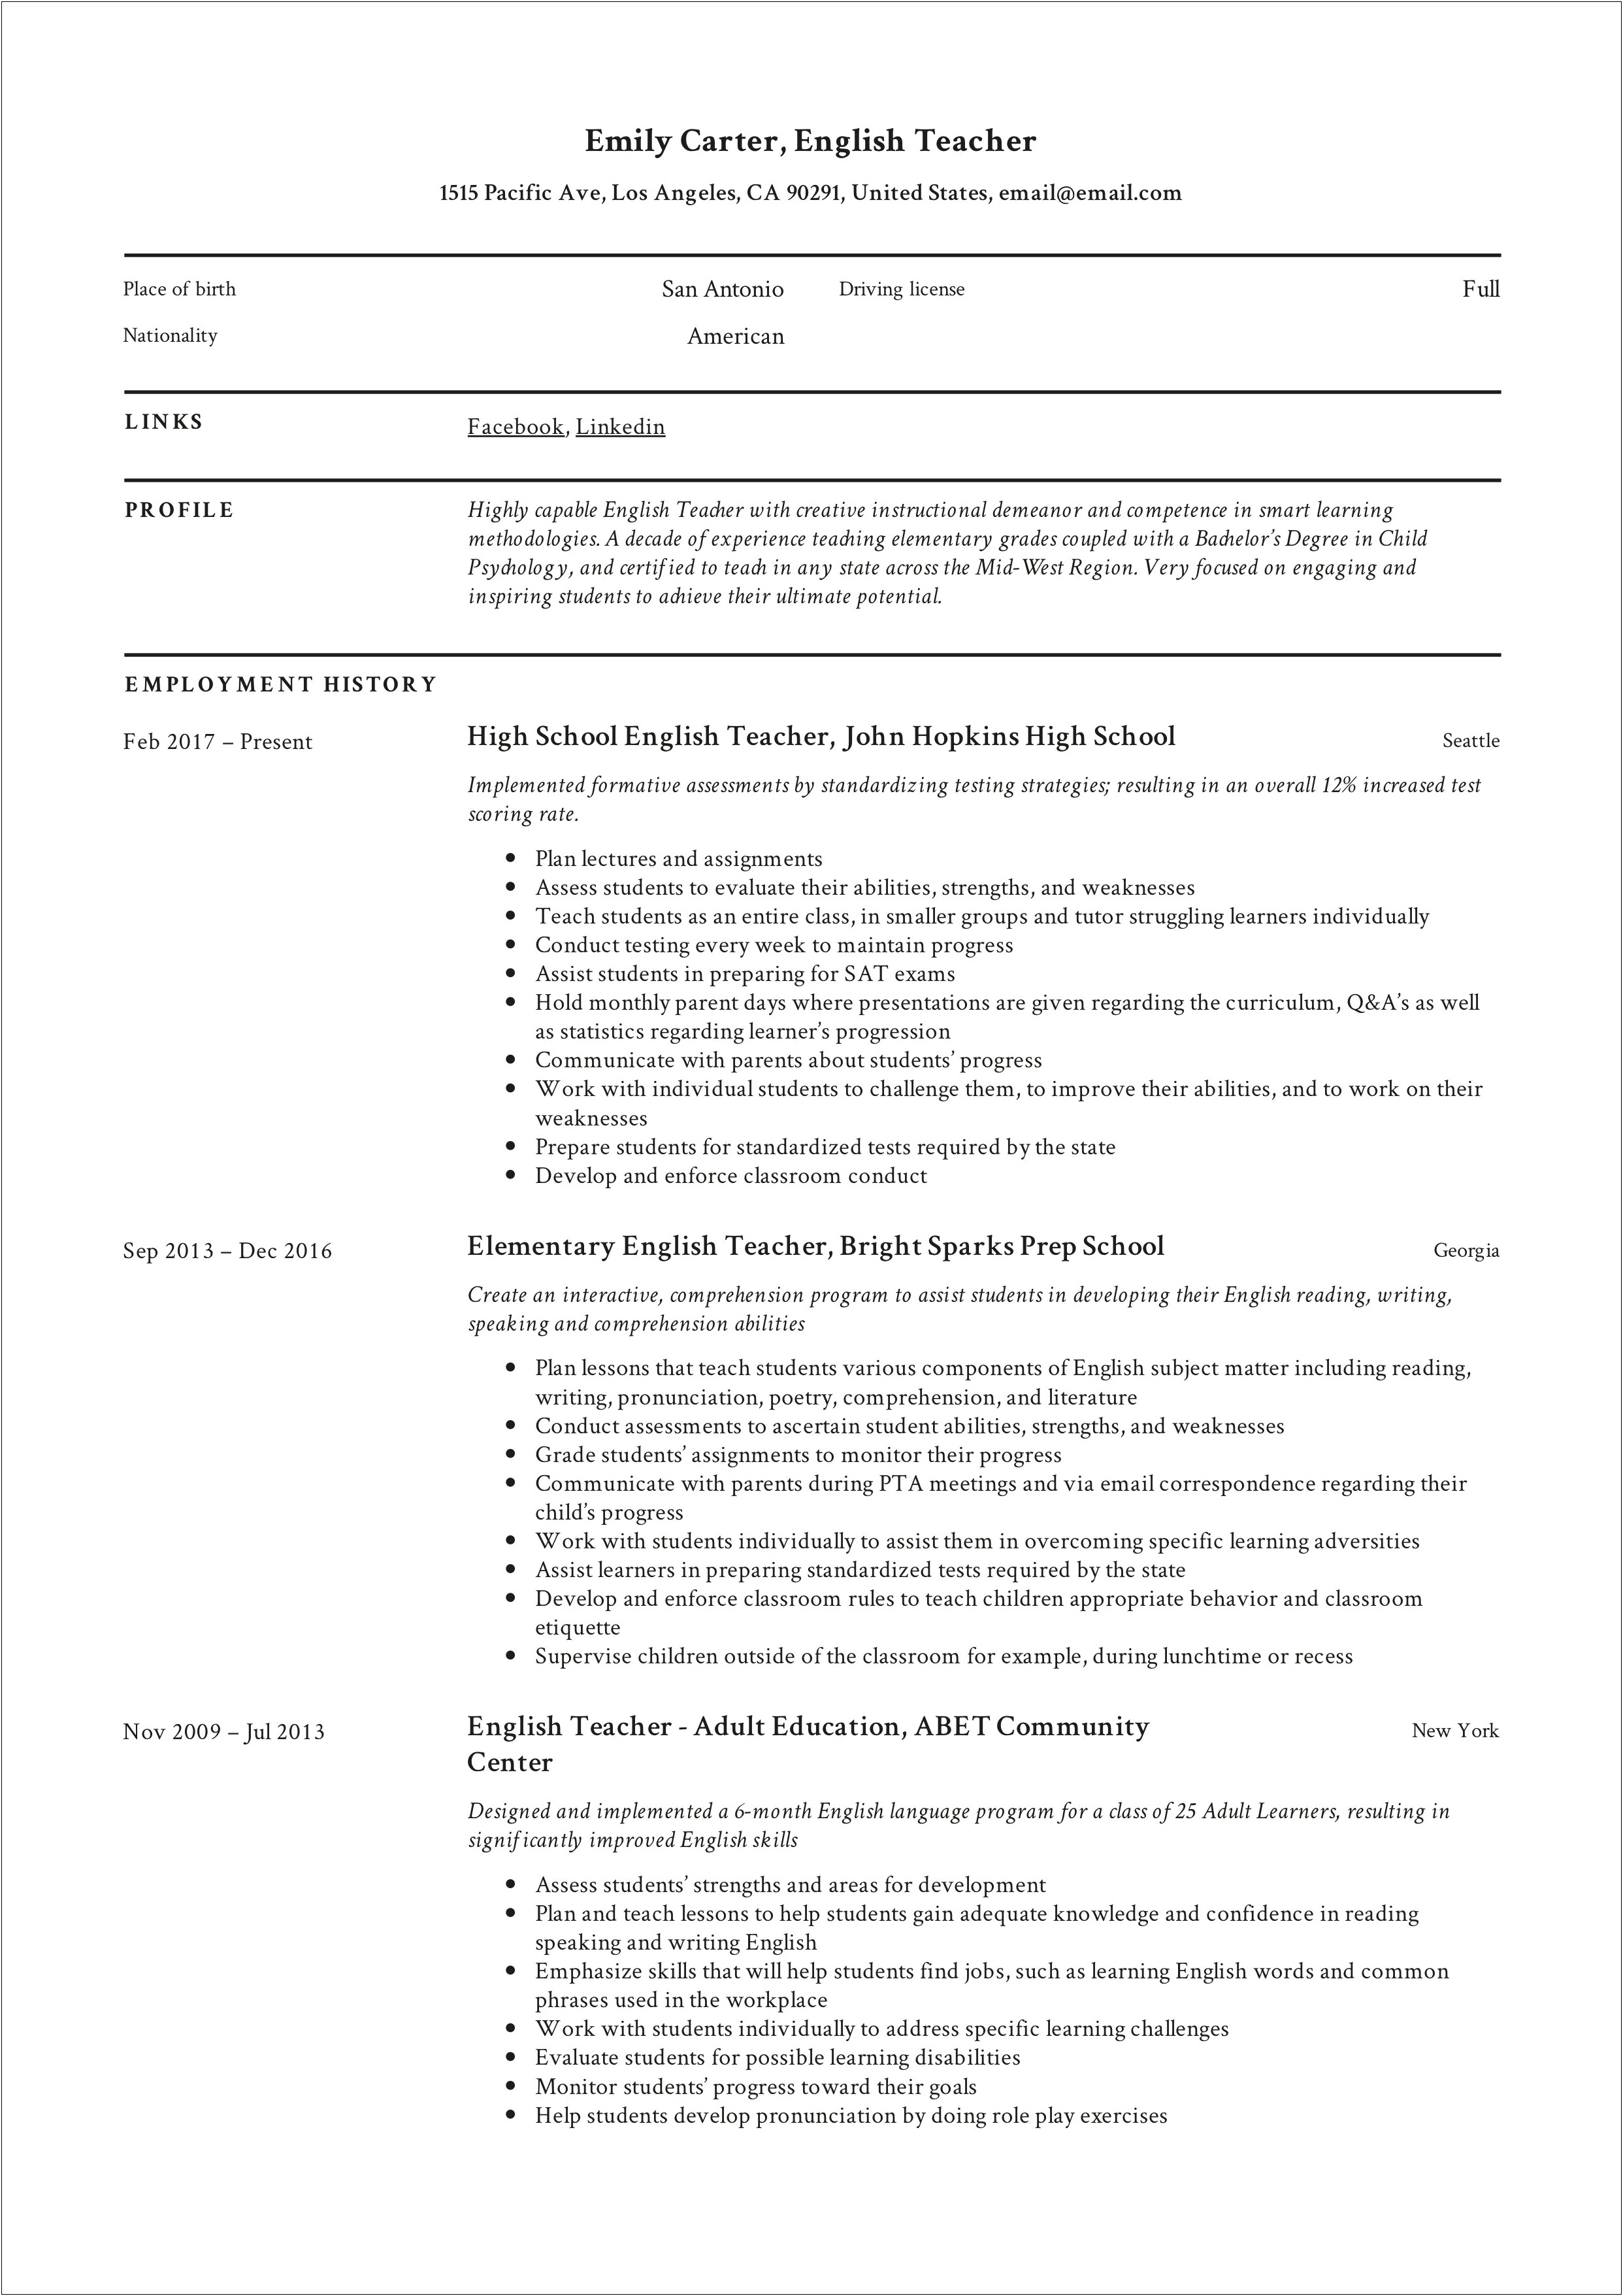 Sample Middl School Resume For Teachers